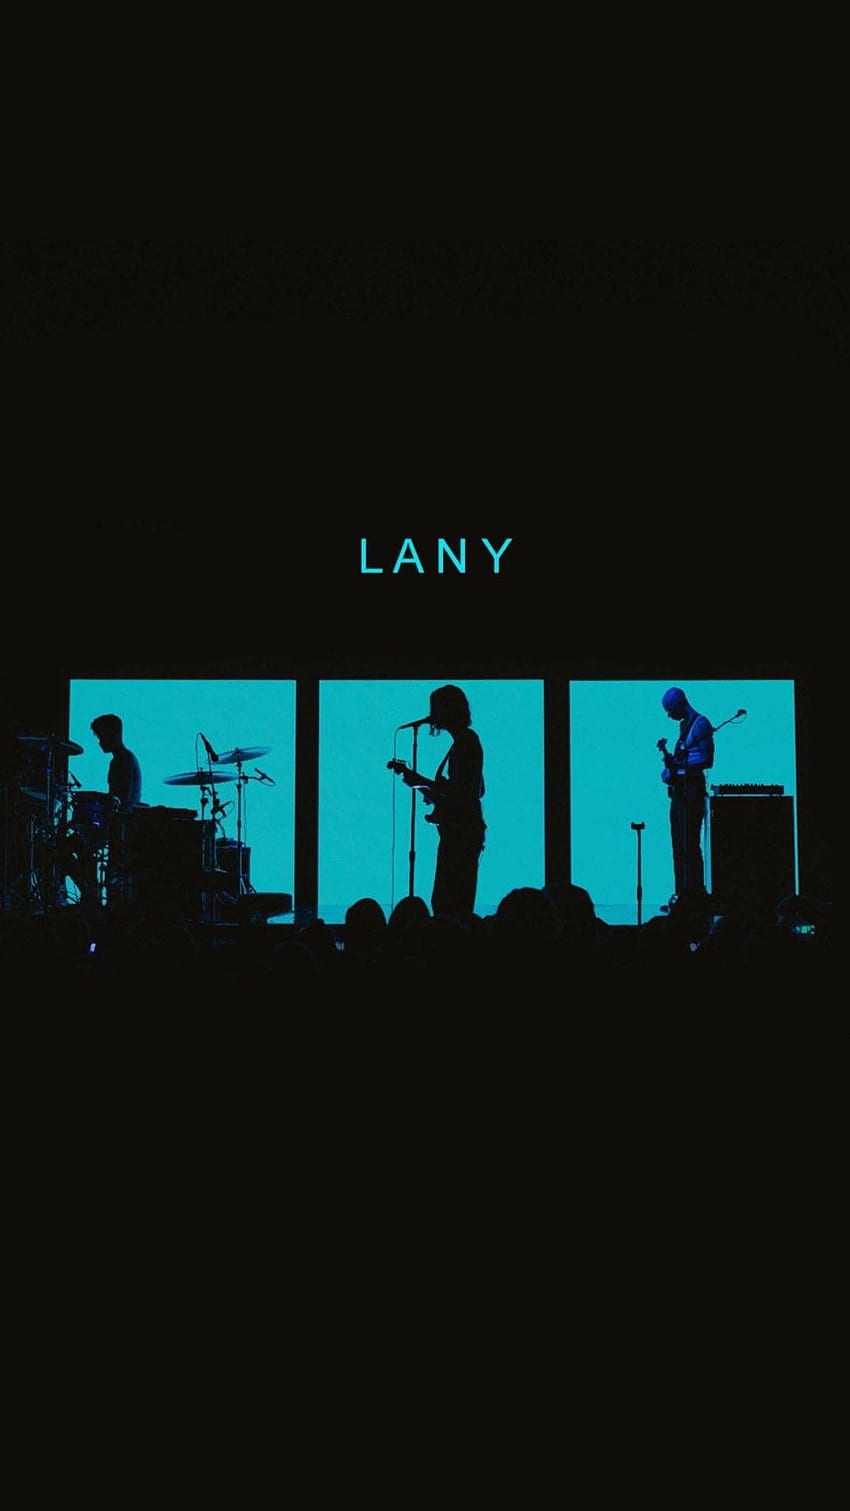 nsd on LANY. Lany band , Lany band, Lany HD phone wallpaper